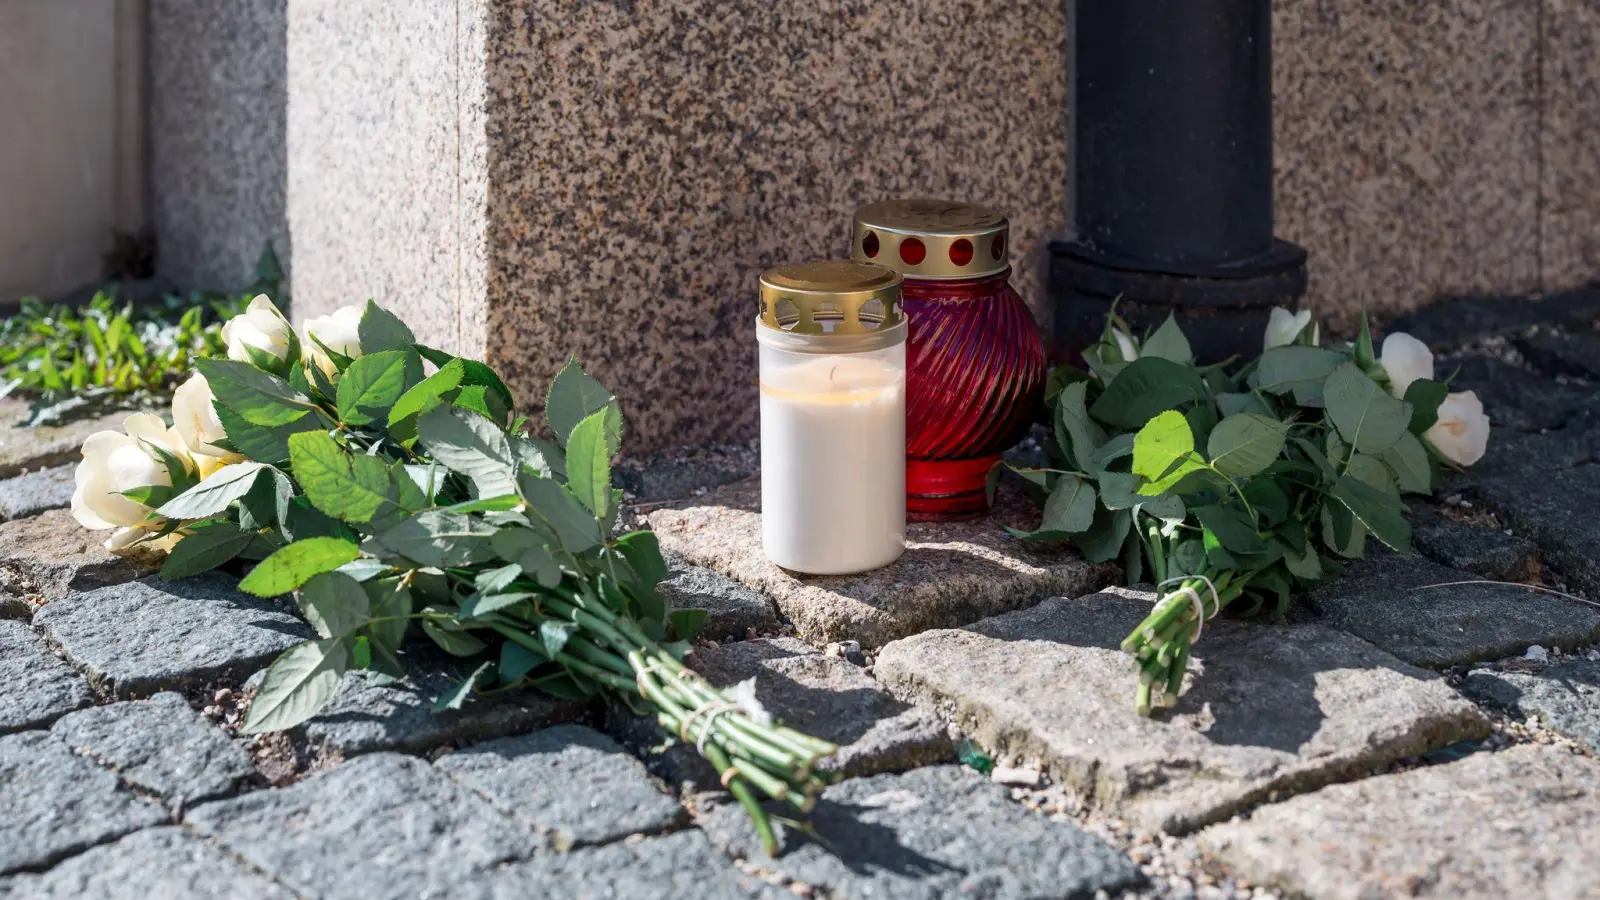 Blumen an der Zufahrtsstraße zum Kinder- und Jugendhilfezentrum in Wunsiedel, wo eine Zehnjährige tot aufgefunden wurde. (Foto: Daniel Vogl/dpa)